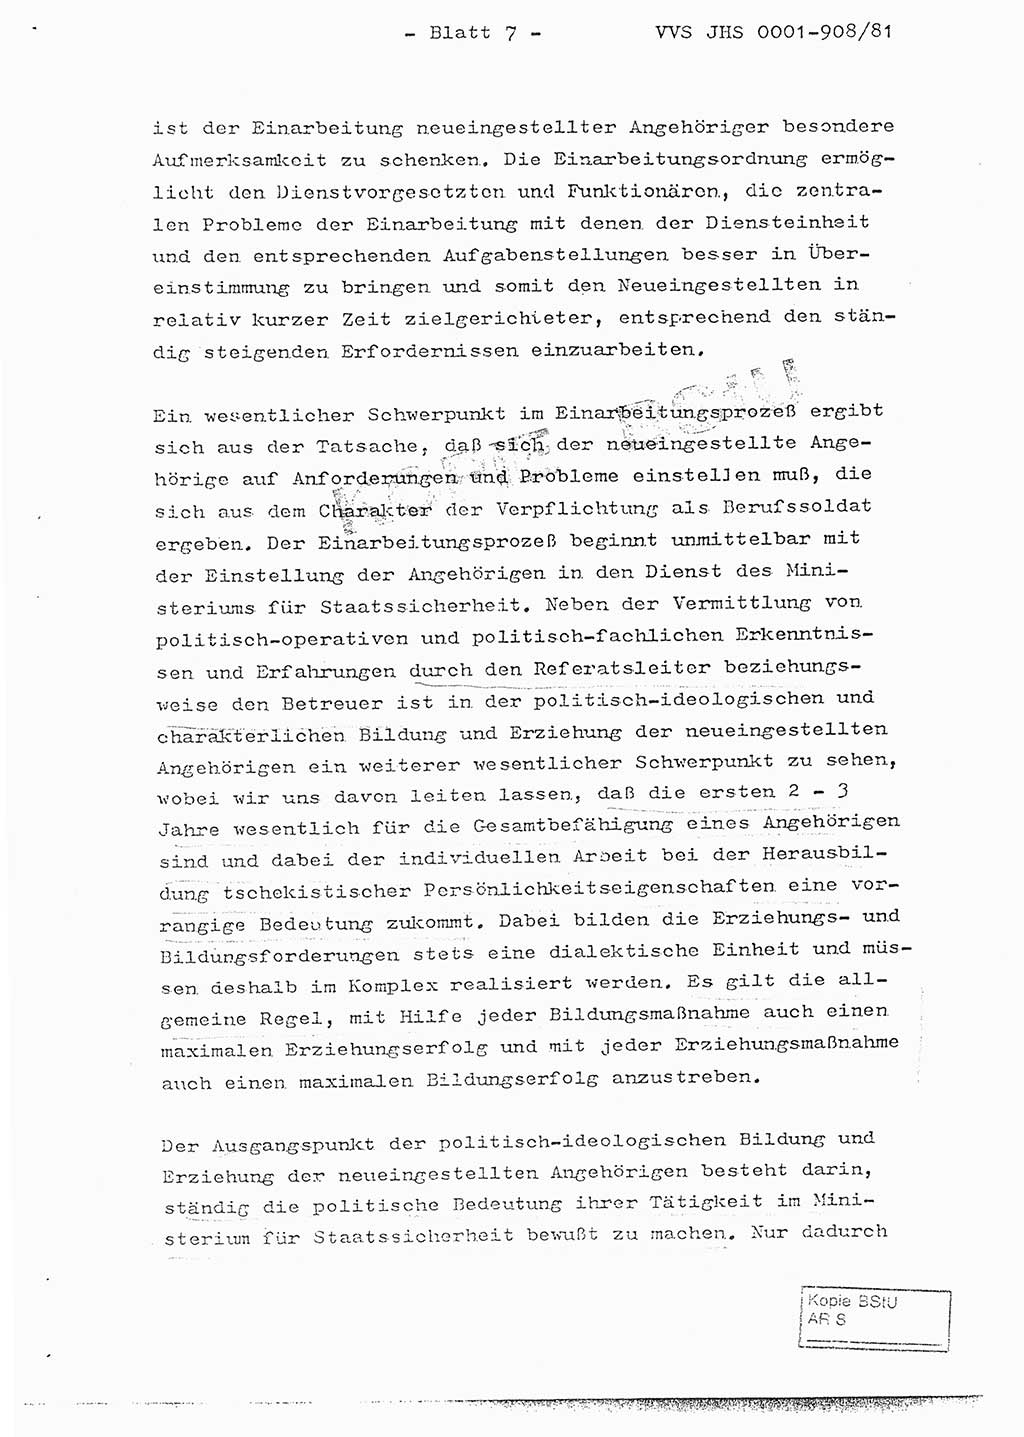 Fachschulabschlußarbeit Oberleutnant Wolfgang Wittmann (Abt. ⅩⅣ), Ministerium für Staatssicherheit (MfS) [Deutsche Demokratische Republik (DDR)], Juristische Hochschule (JHS), Vertrauliche Verschlußsache (VVS) o001-908/82, Potsdam 1982, Blatt 7 (FS-Abschl.-Arb. MfS DDR JHS VVS o001-908/82 1982, Bl. 7)